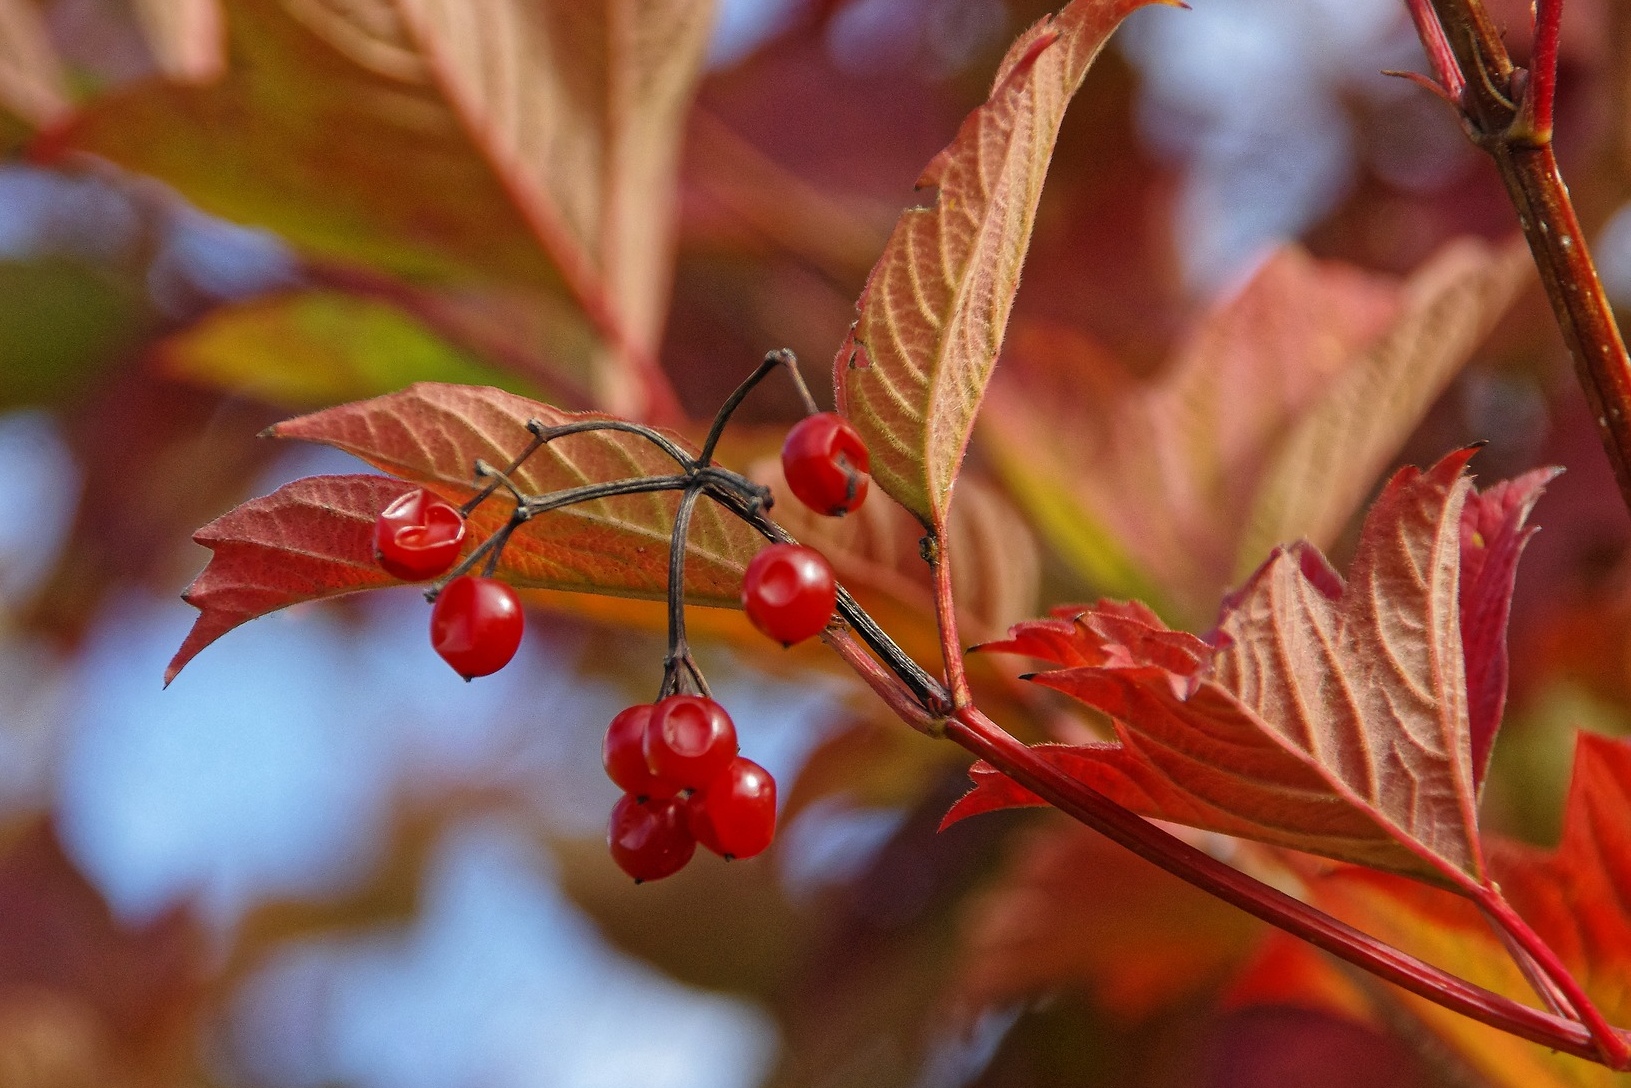 "Viburnum berries in autumn"